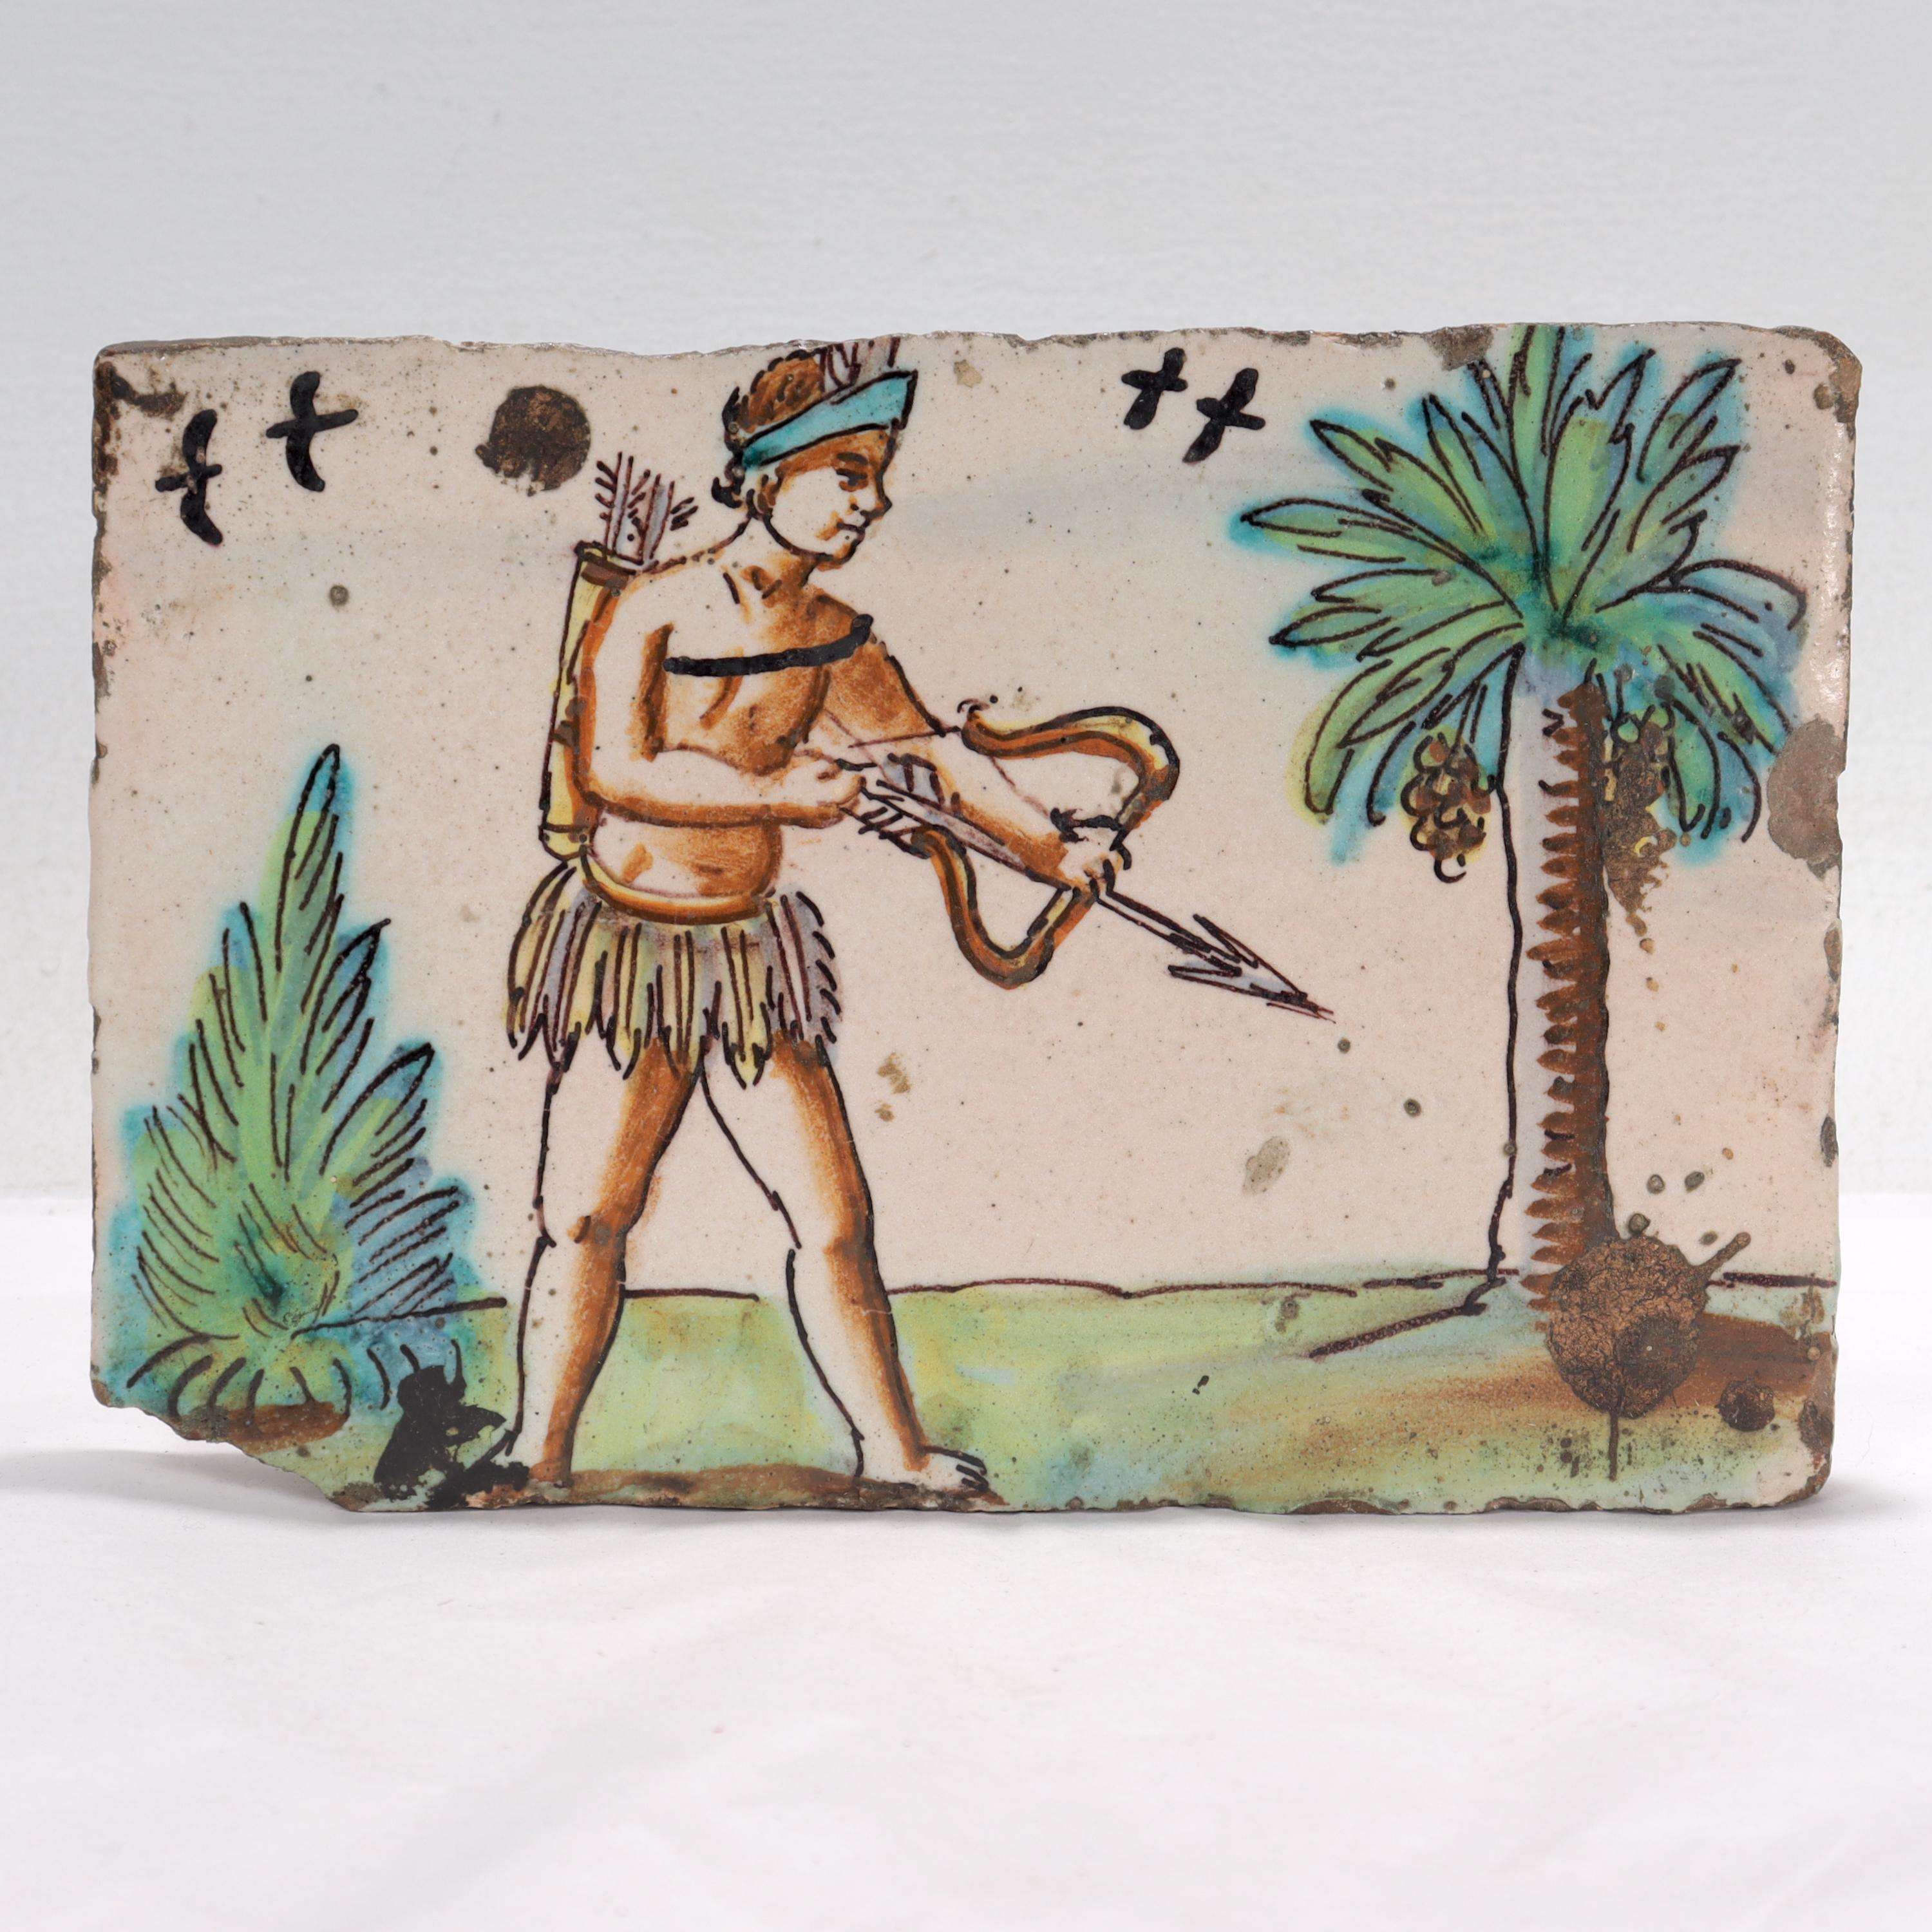 Eine schöne antike Keramikfliese aus dem 18.

In Terrakotta.

Zeigt einen indianischen Bogenschützen in einem Grasrock mit Vögeln und Pflanzen im Hintergrund.

Wahrscheinlich niederländischer Herkunft.

Einfach eine tolle antike